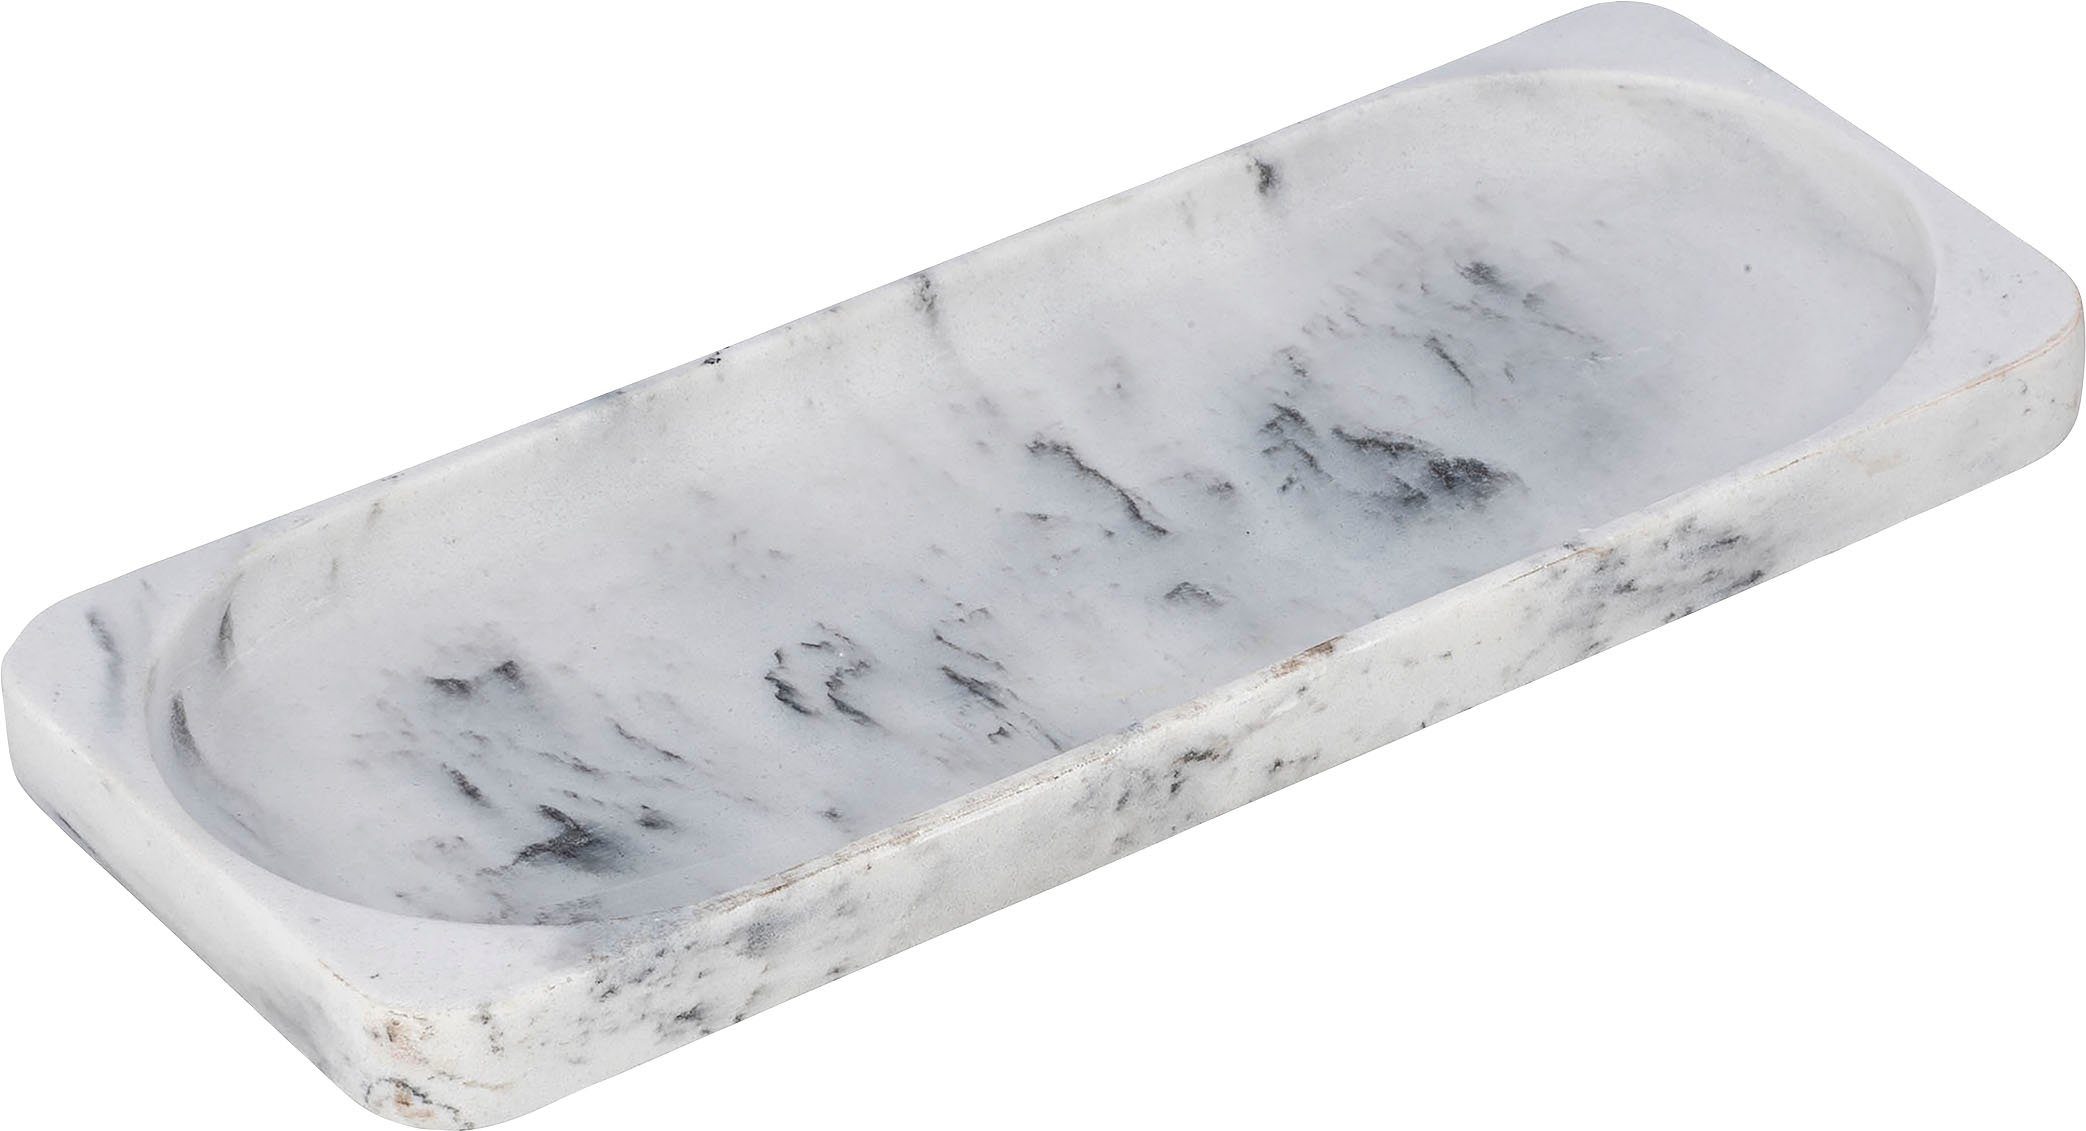 WENKO Ablageelement Desio, 1 Ablageschale, Elegante Badablage in  Natursteinoptik weiß, mit zarter Marmorstruktur in grau